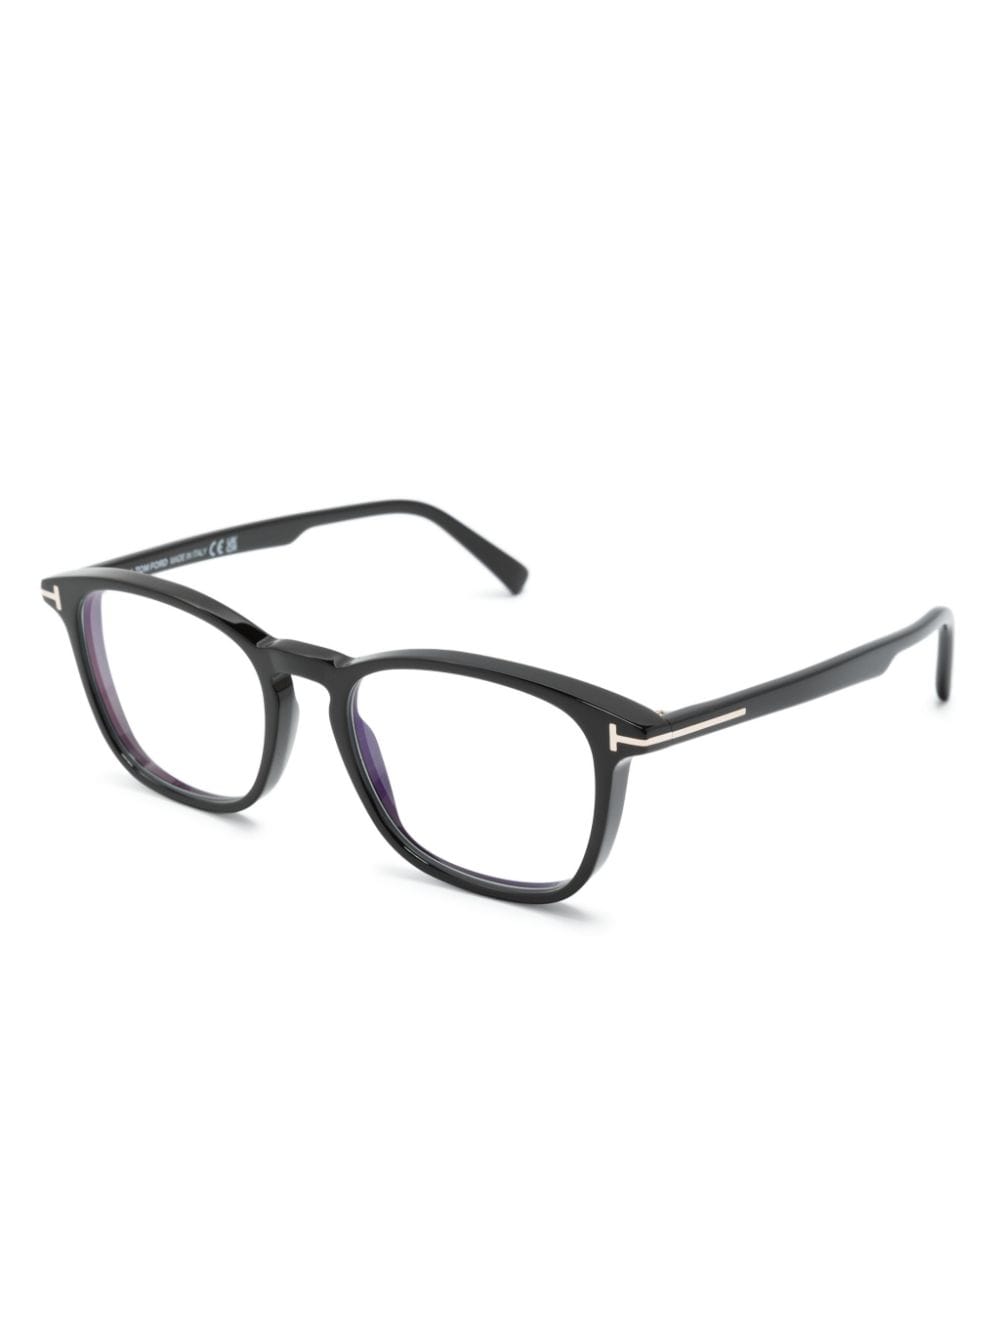 TOM FORD Eyewear light-filtering round-frame glasses - Zwart